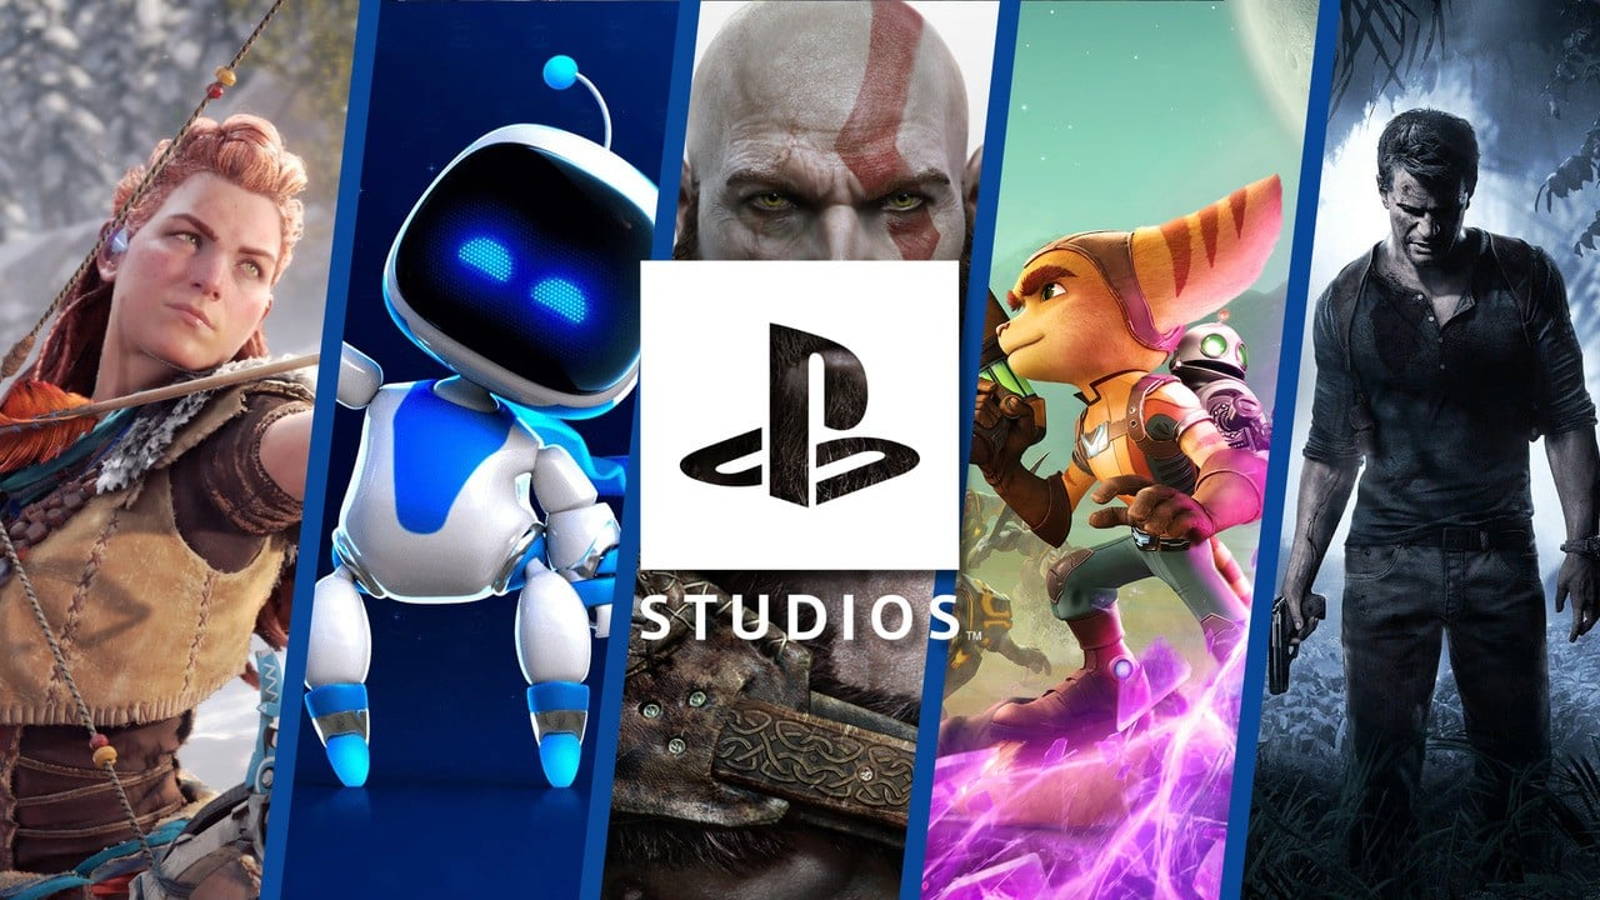 Studios Quality - Xbox Game Studios